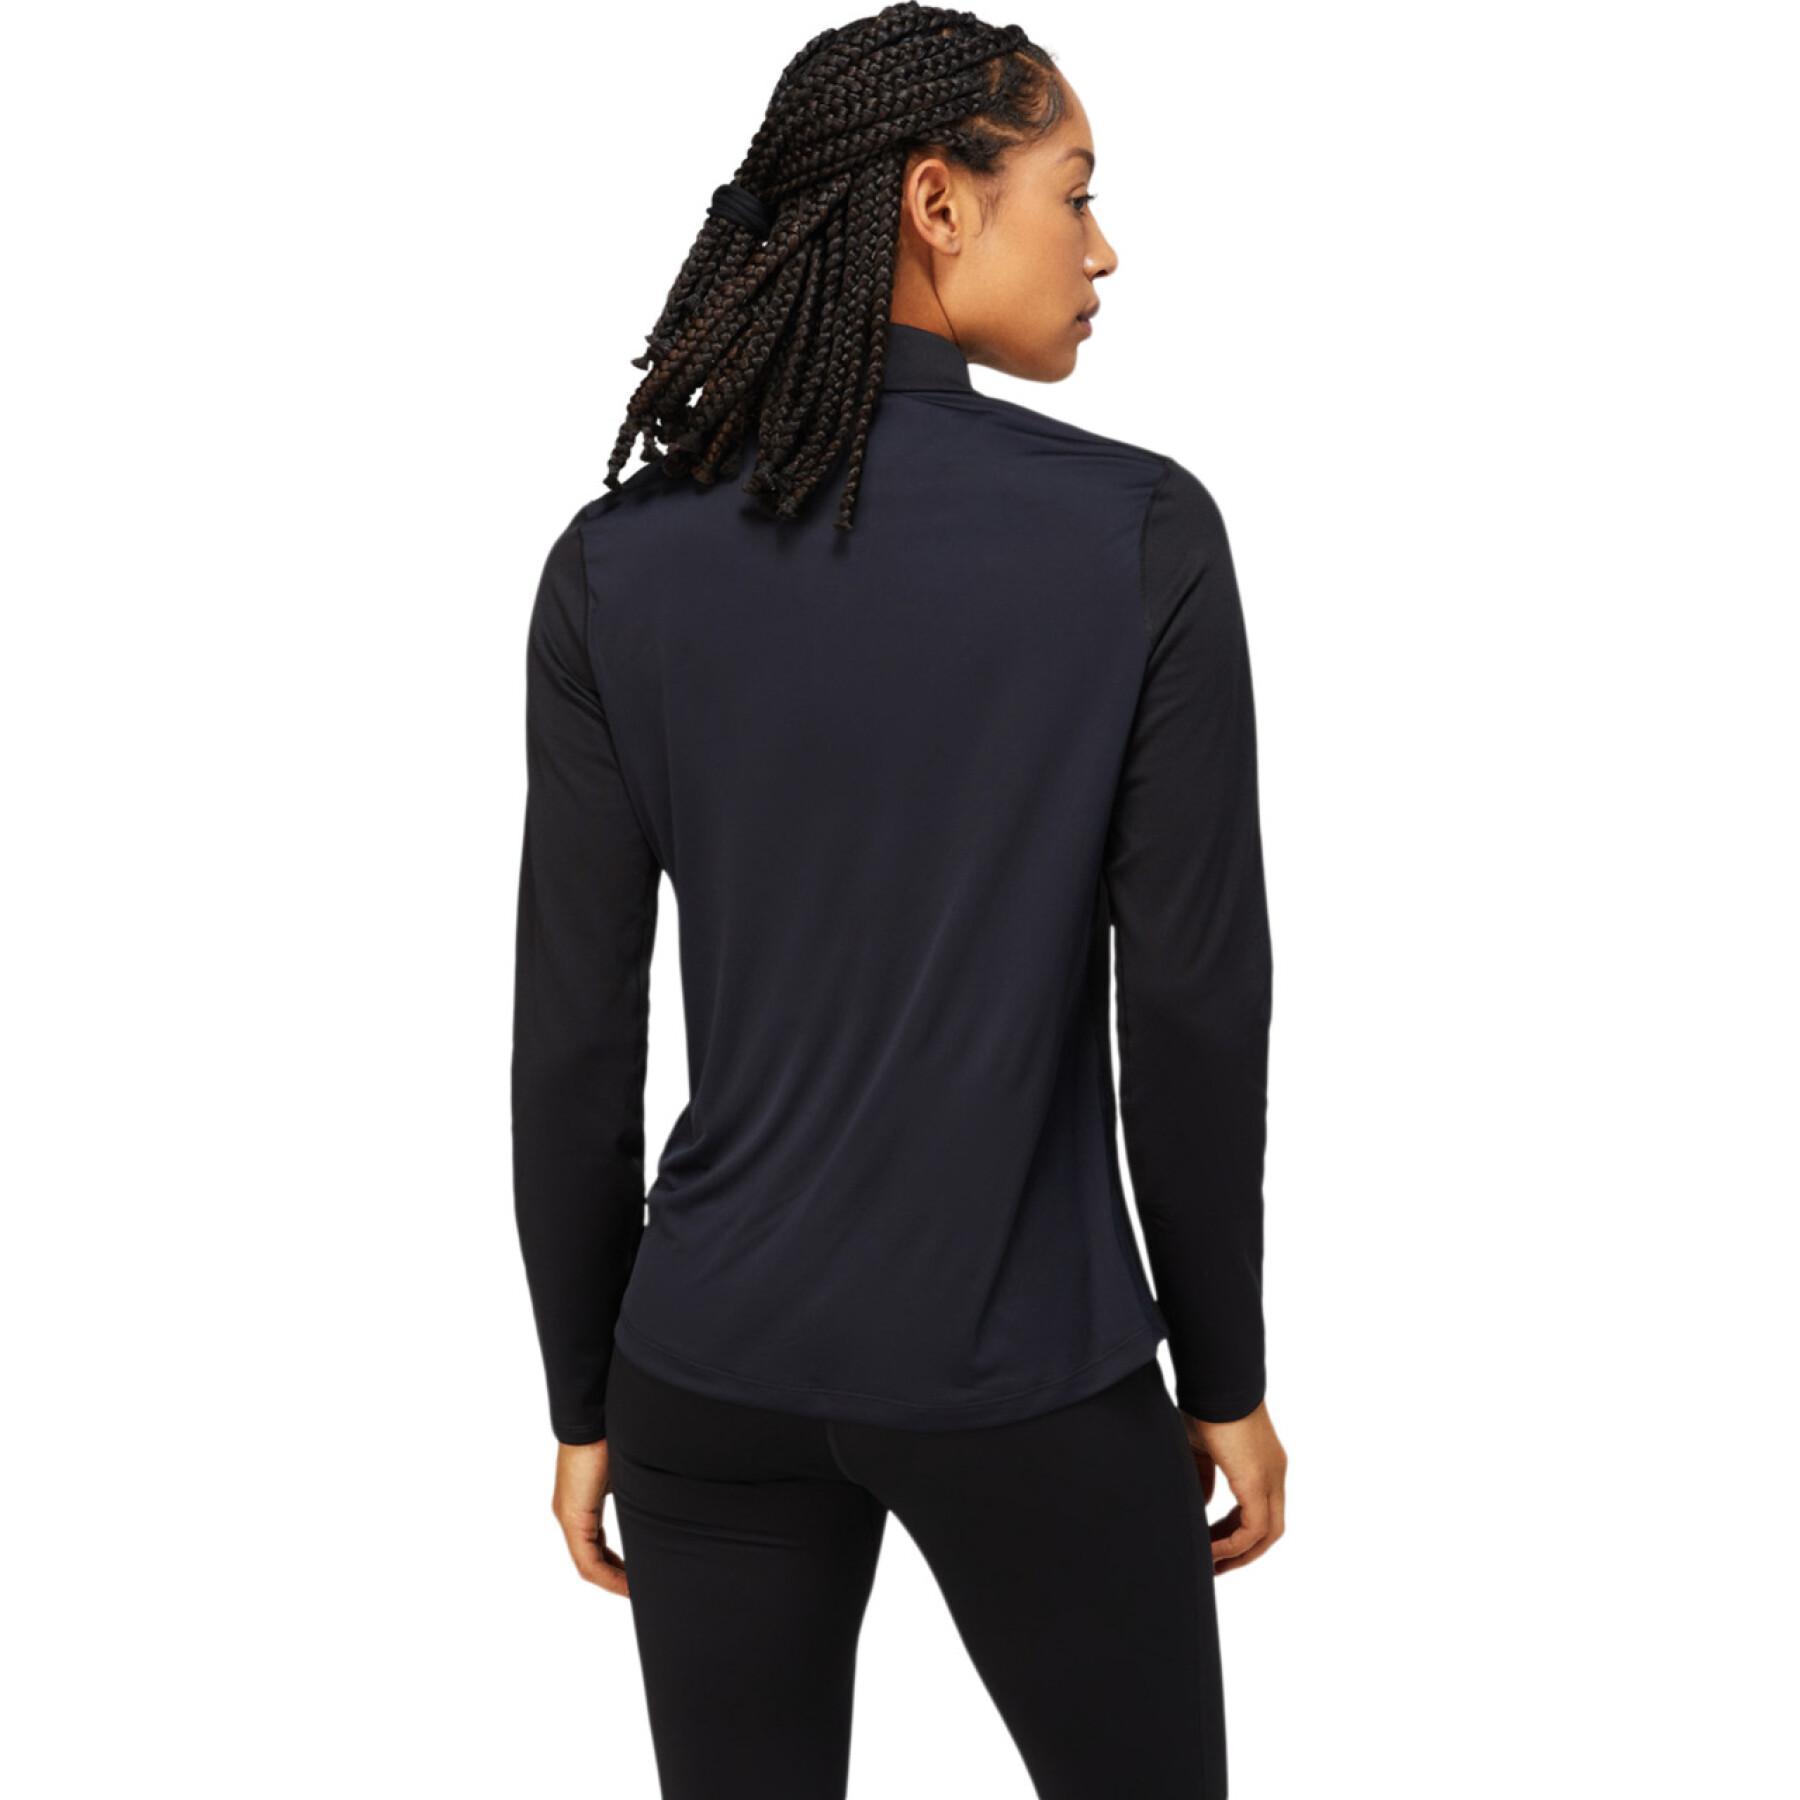 Asics Core Women's Long Sleeve T-Shirt 1/2 Lite-Show Zip Winter